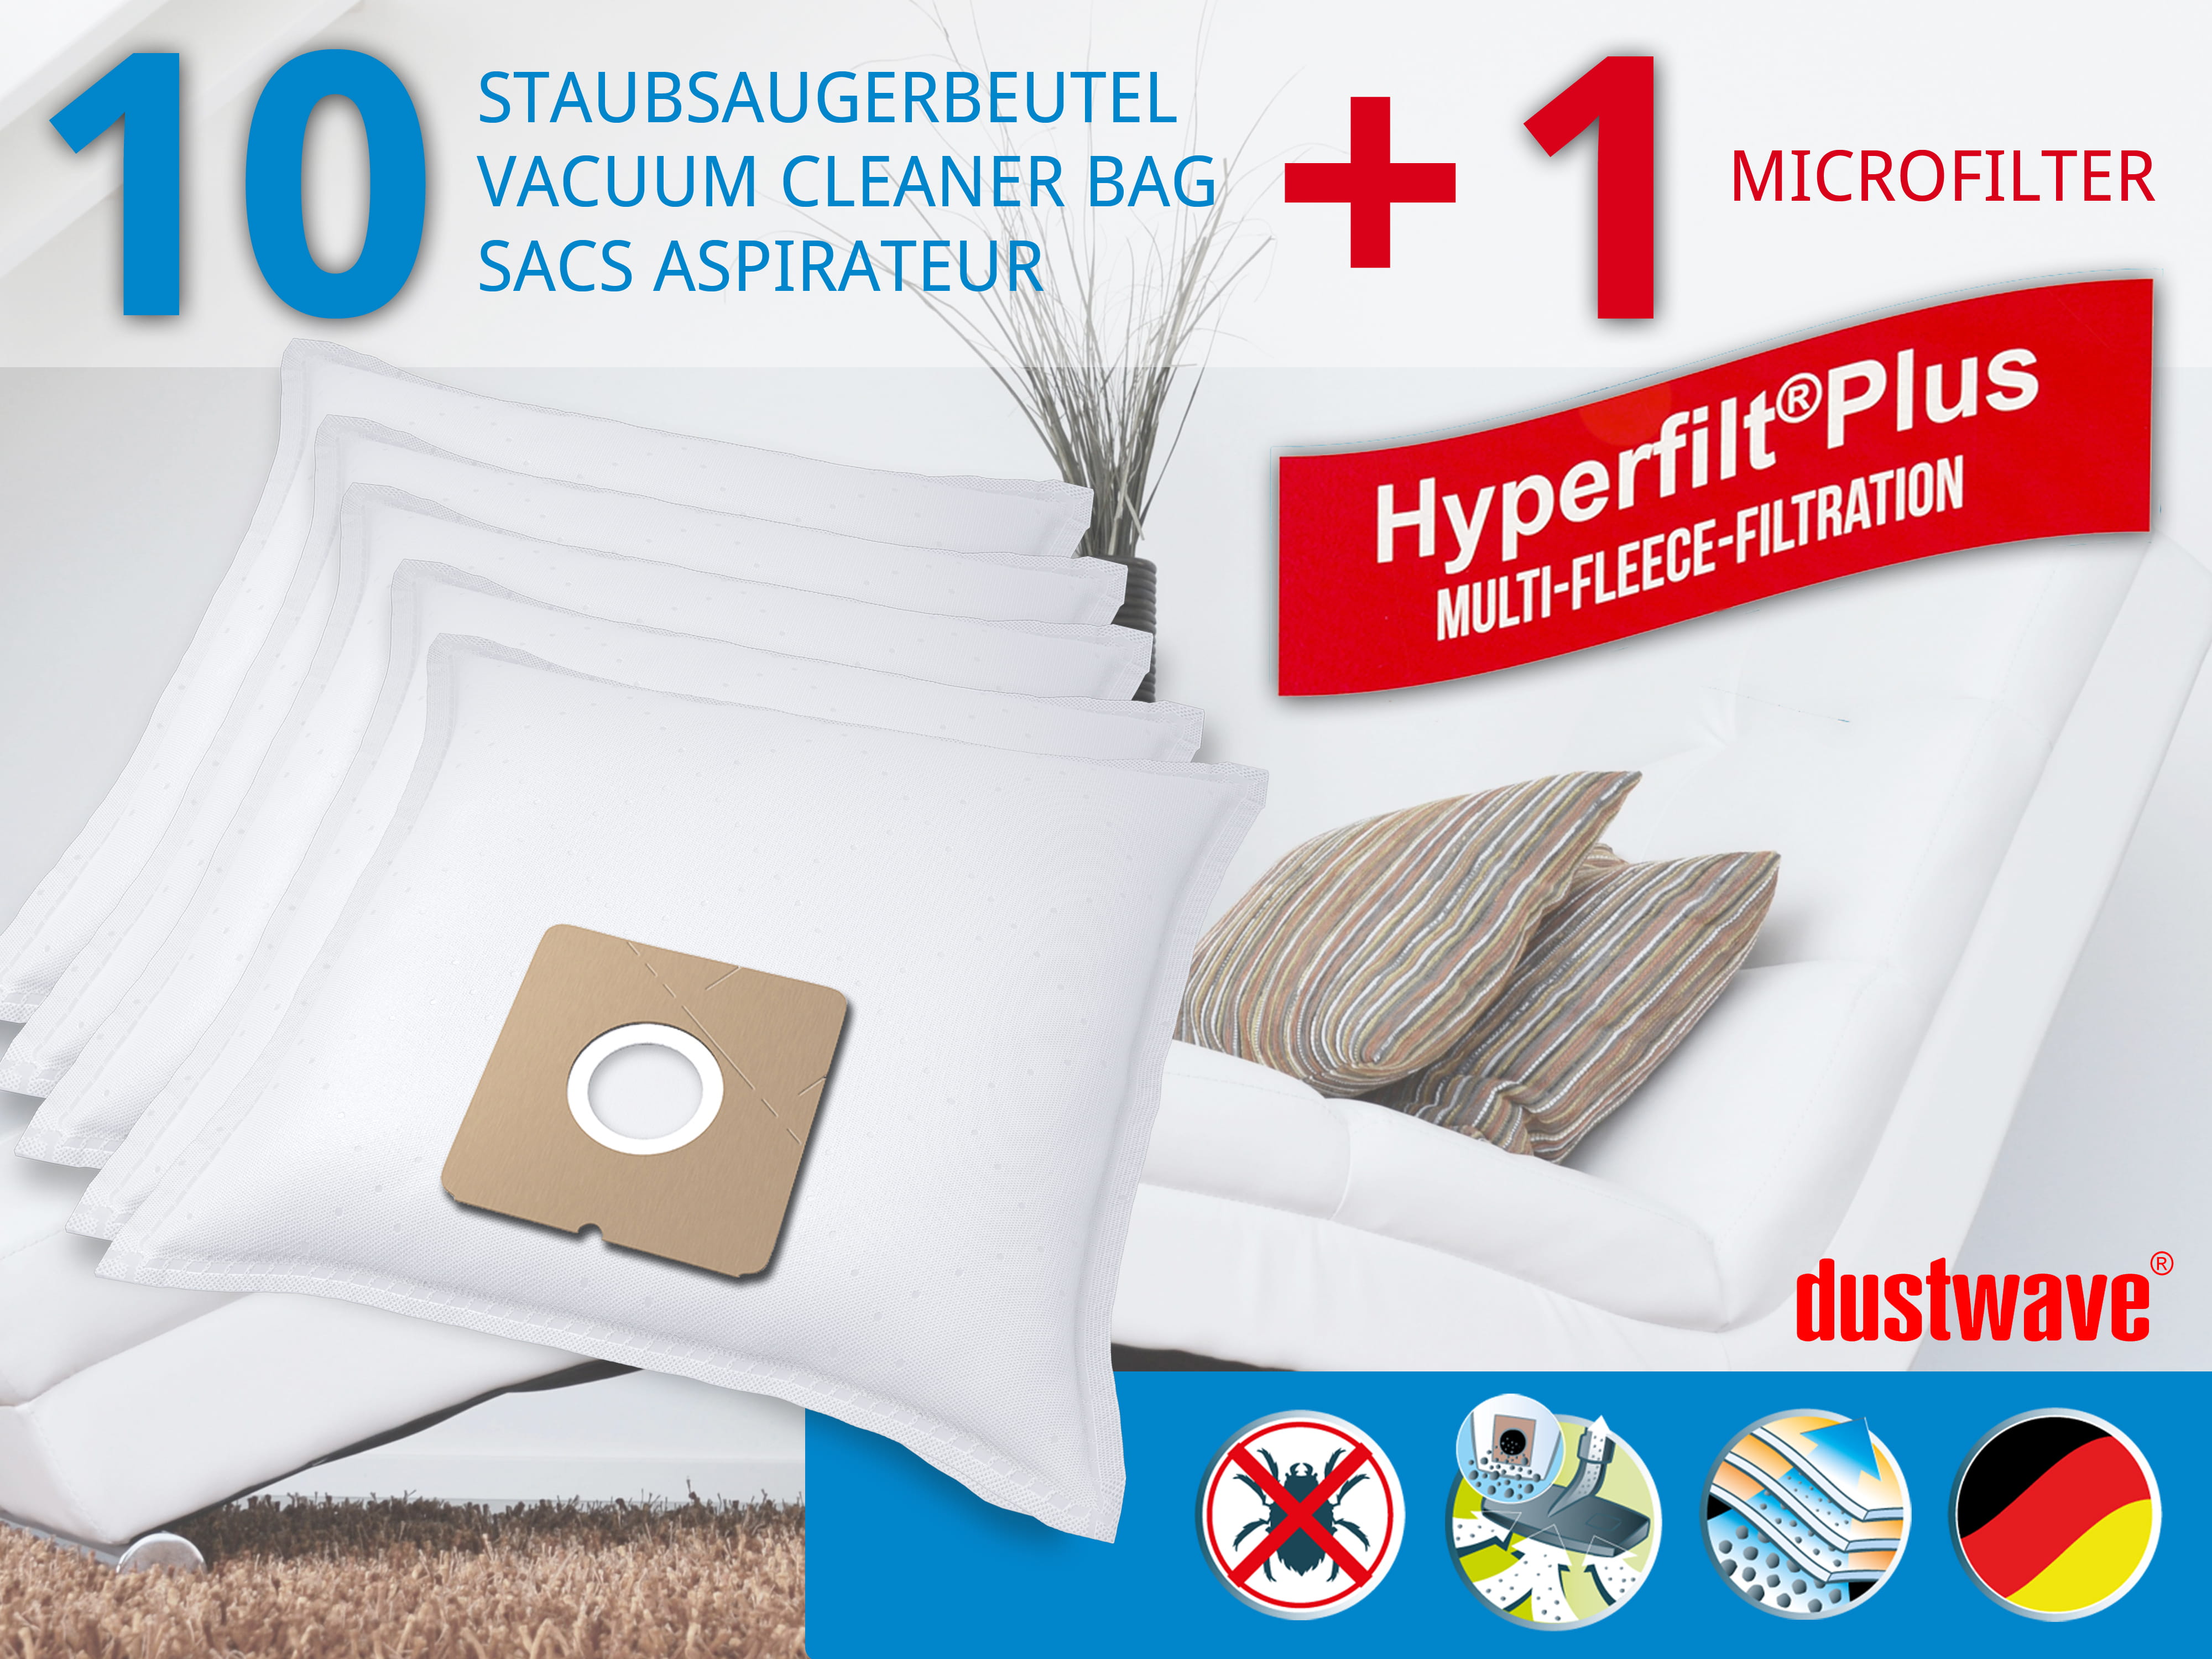 Dustwave® 10 Staubsaugerbeutel für Bravo B 4109 - hocheffizient, mehrlagiges Mikrovlies mit Hygieneverschluss - Made in Germany